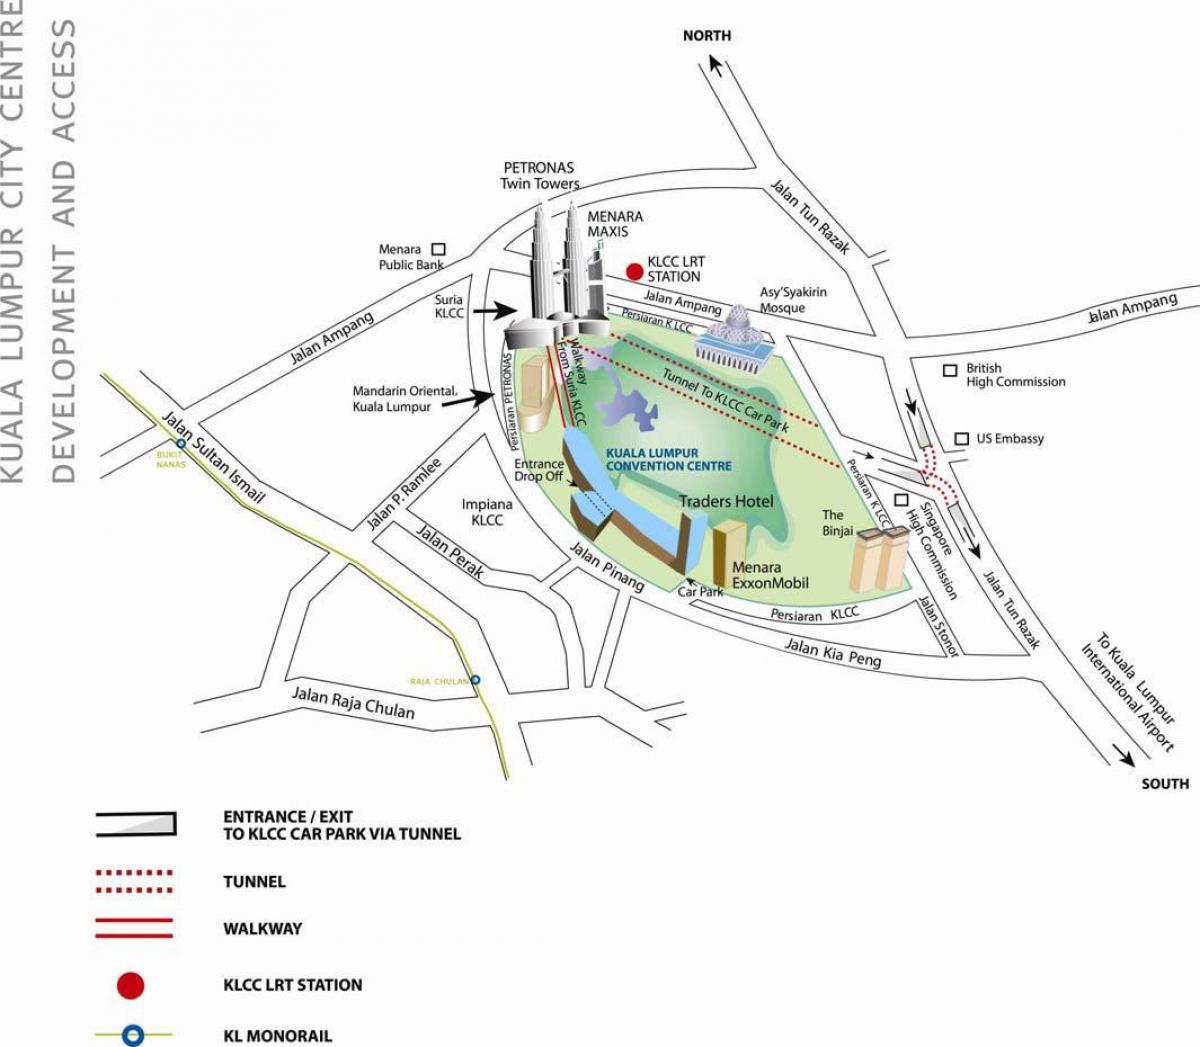 Mapa ng kuala lumpur convention centre